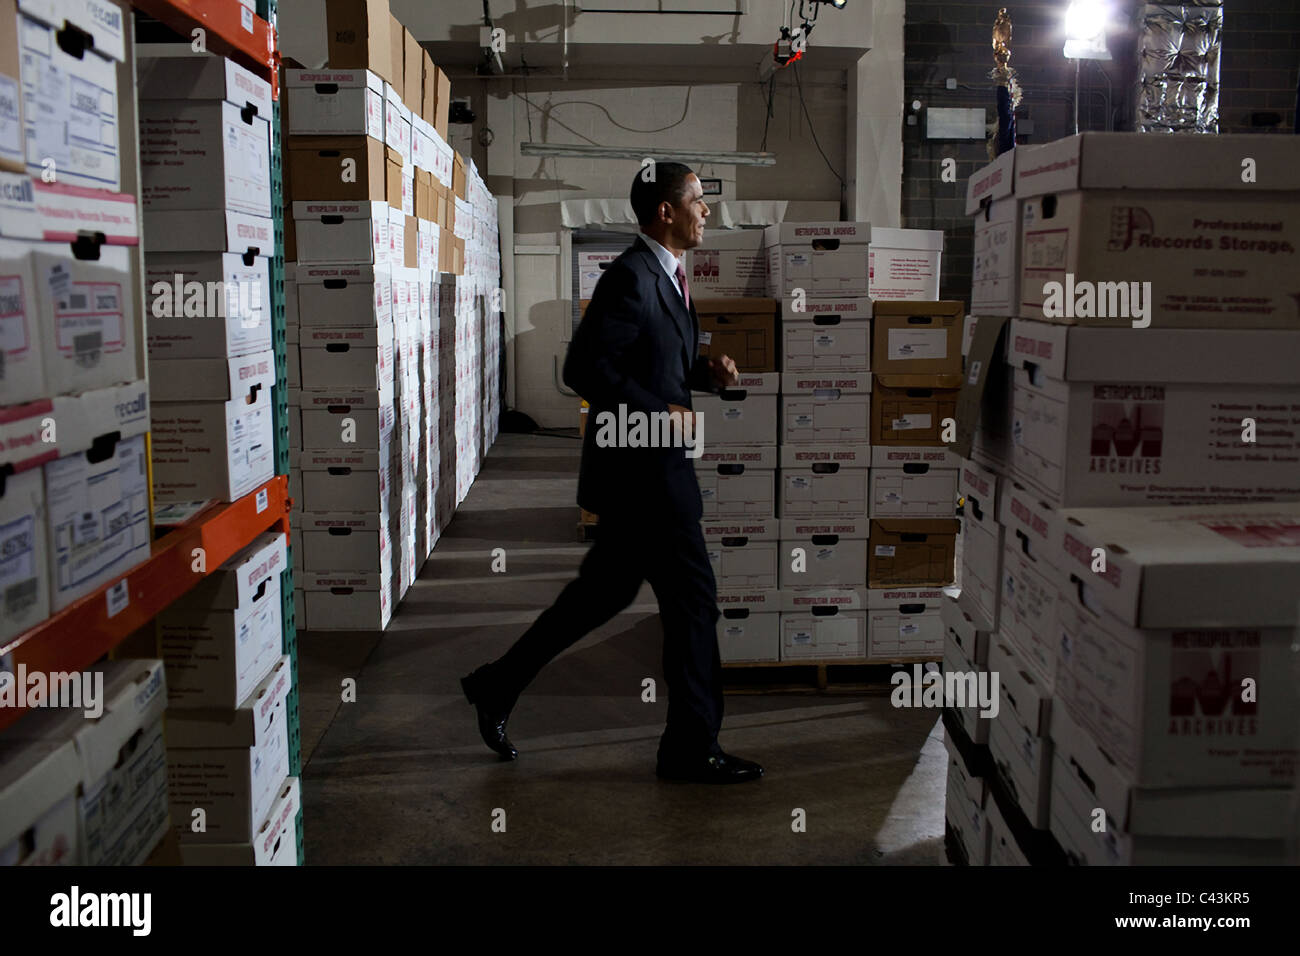 Präsident Barack Obama joggt vorbei an Feldern auf dem Weg nach Bemerkungen auf einem Small Business Administration Event liefern Stockfoto